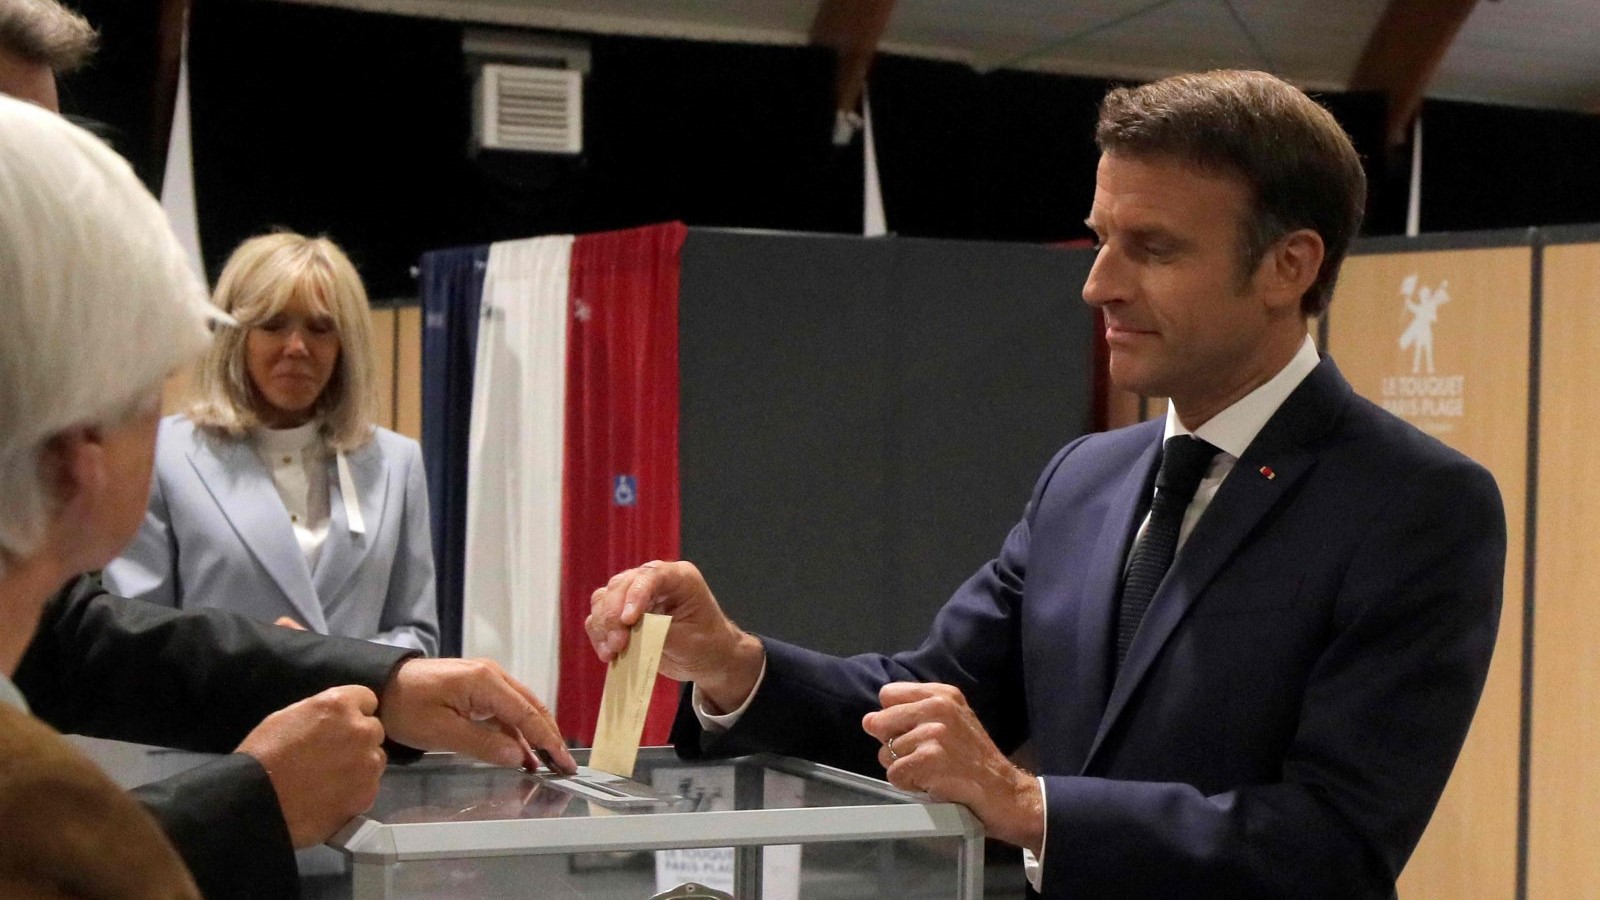 الرئيس الفرنسي إيمانويل ماكرون (يمين) يدلي بصوته إلى جانب زوجته بريجيت ماكرون خلال المرحلة الثانية من الانتخابات البرلمانية الفرنسية في مركز اقتراع في لوتوكيه شمال فرنسا ، 19 يونيو 2022